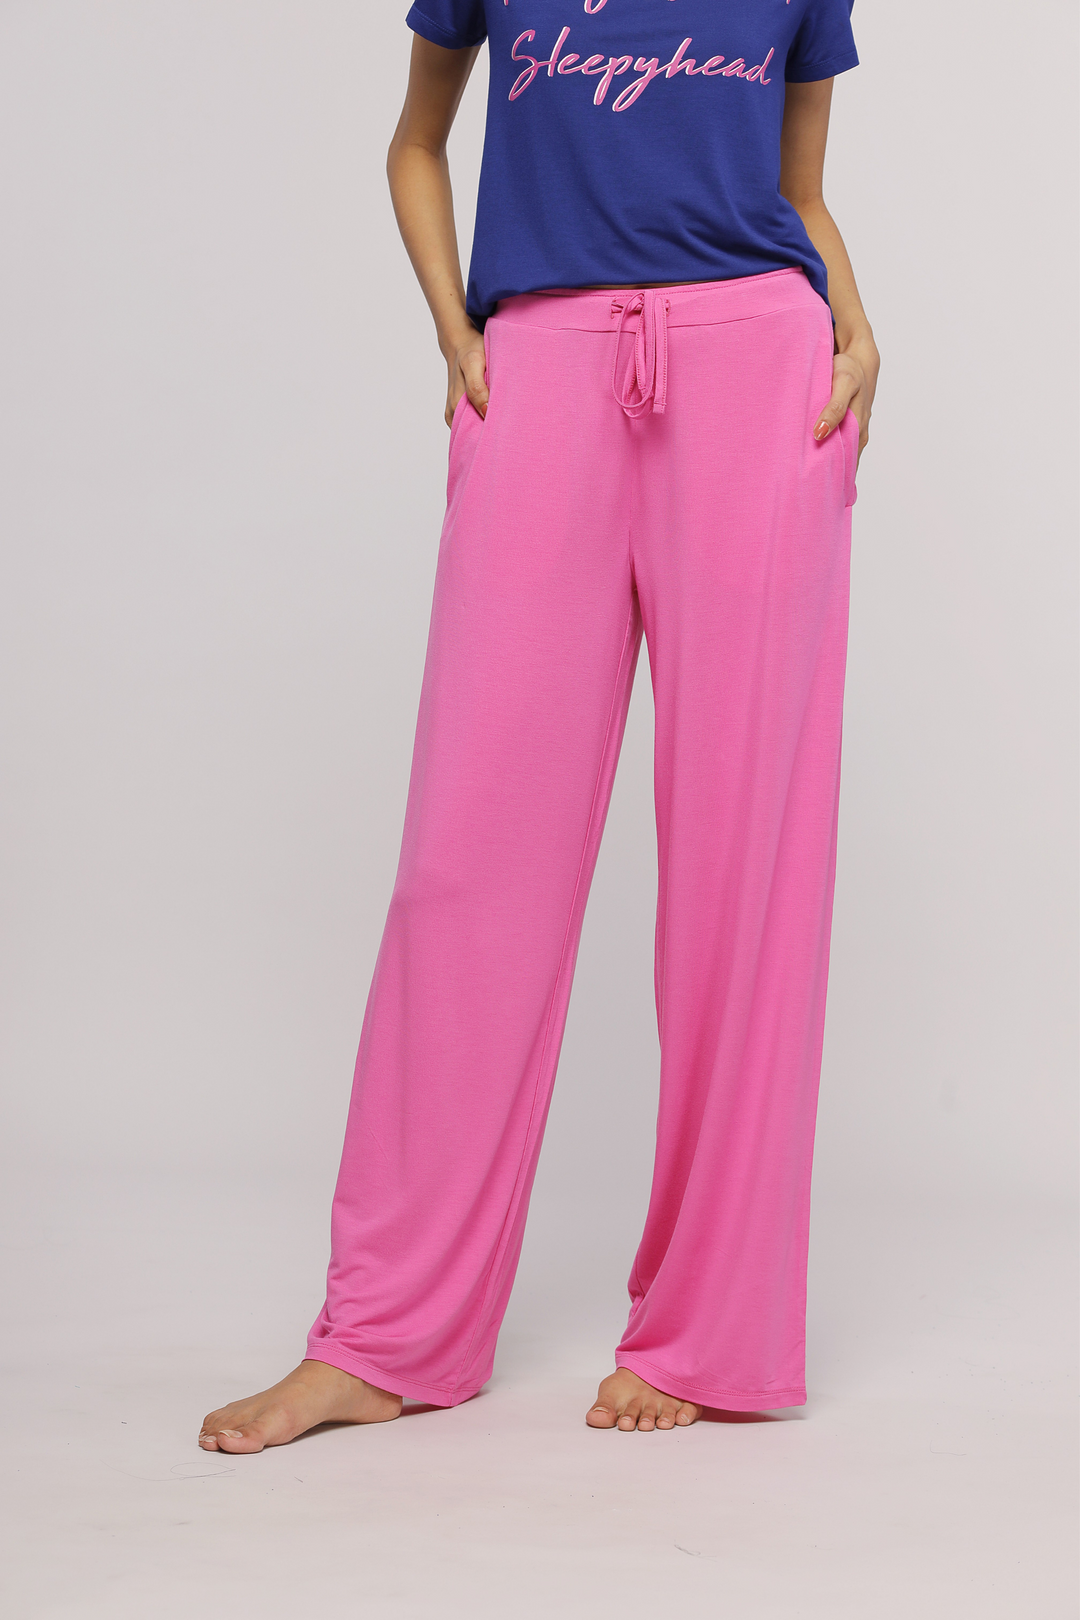 Glam Pink Flared Pajamas